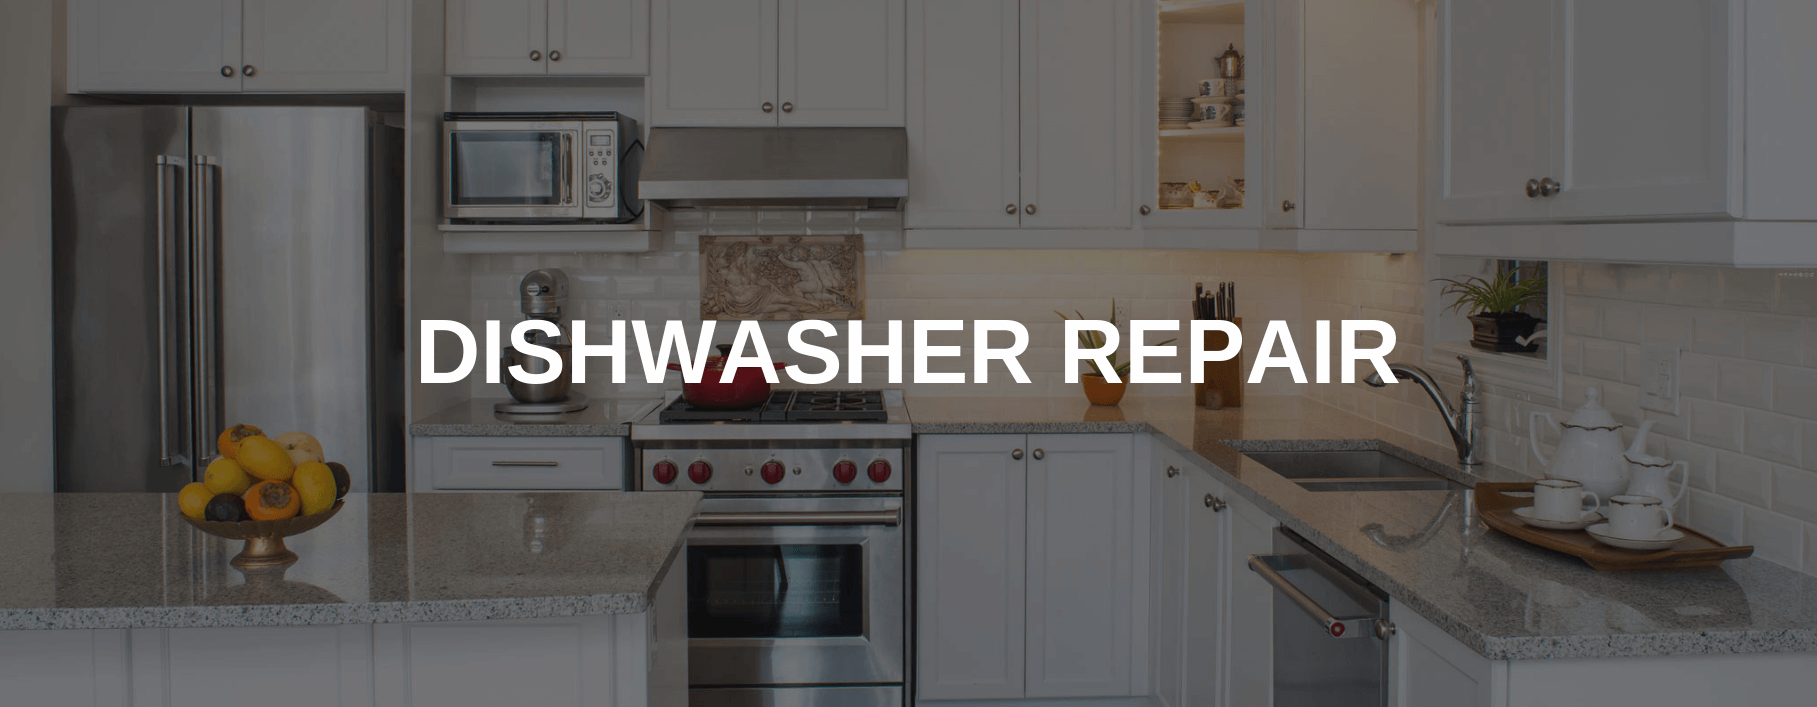 dishwasher repair arlington